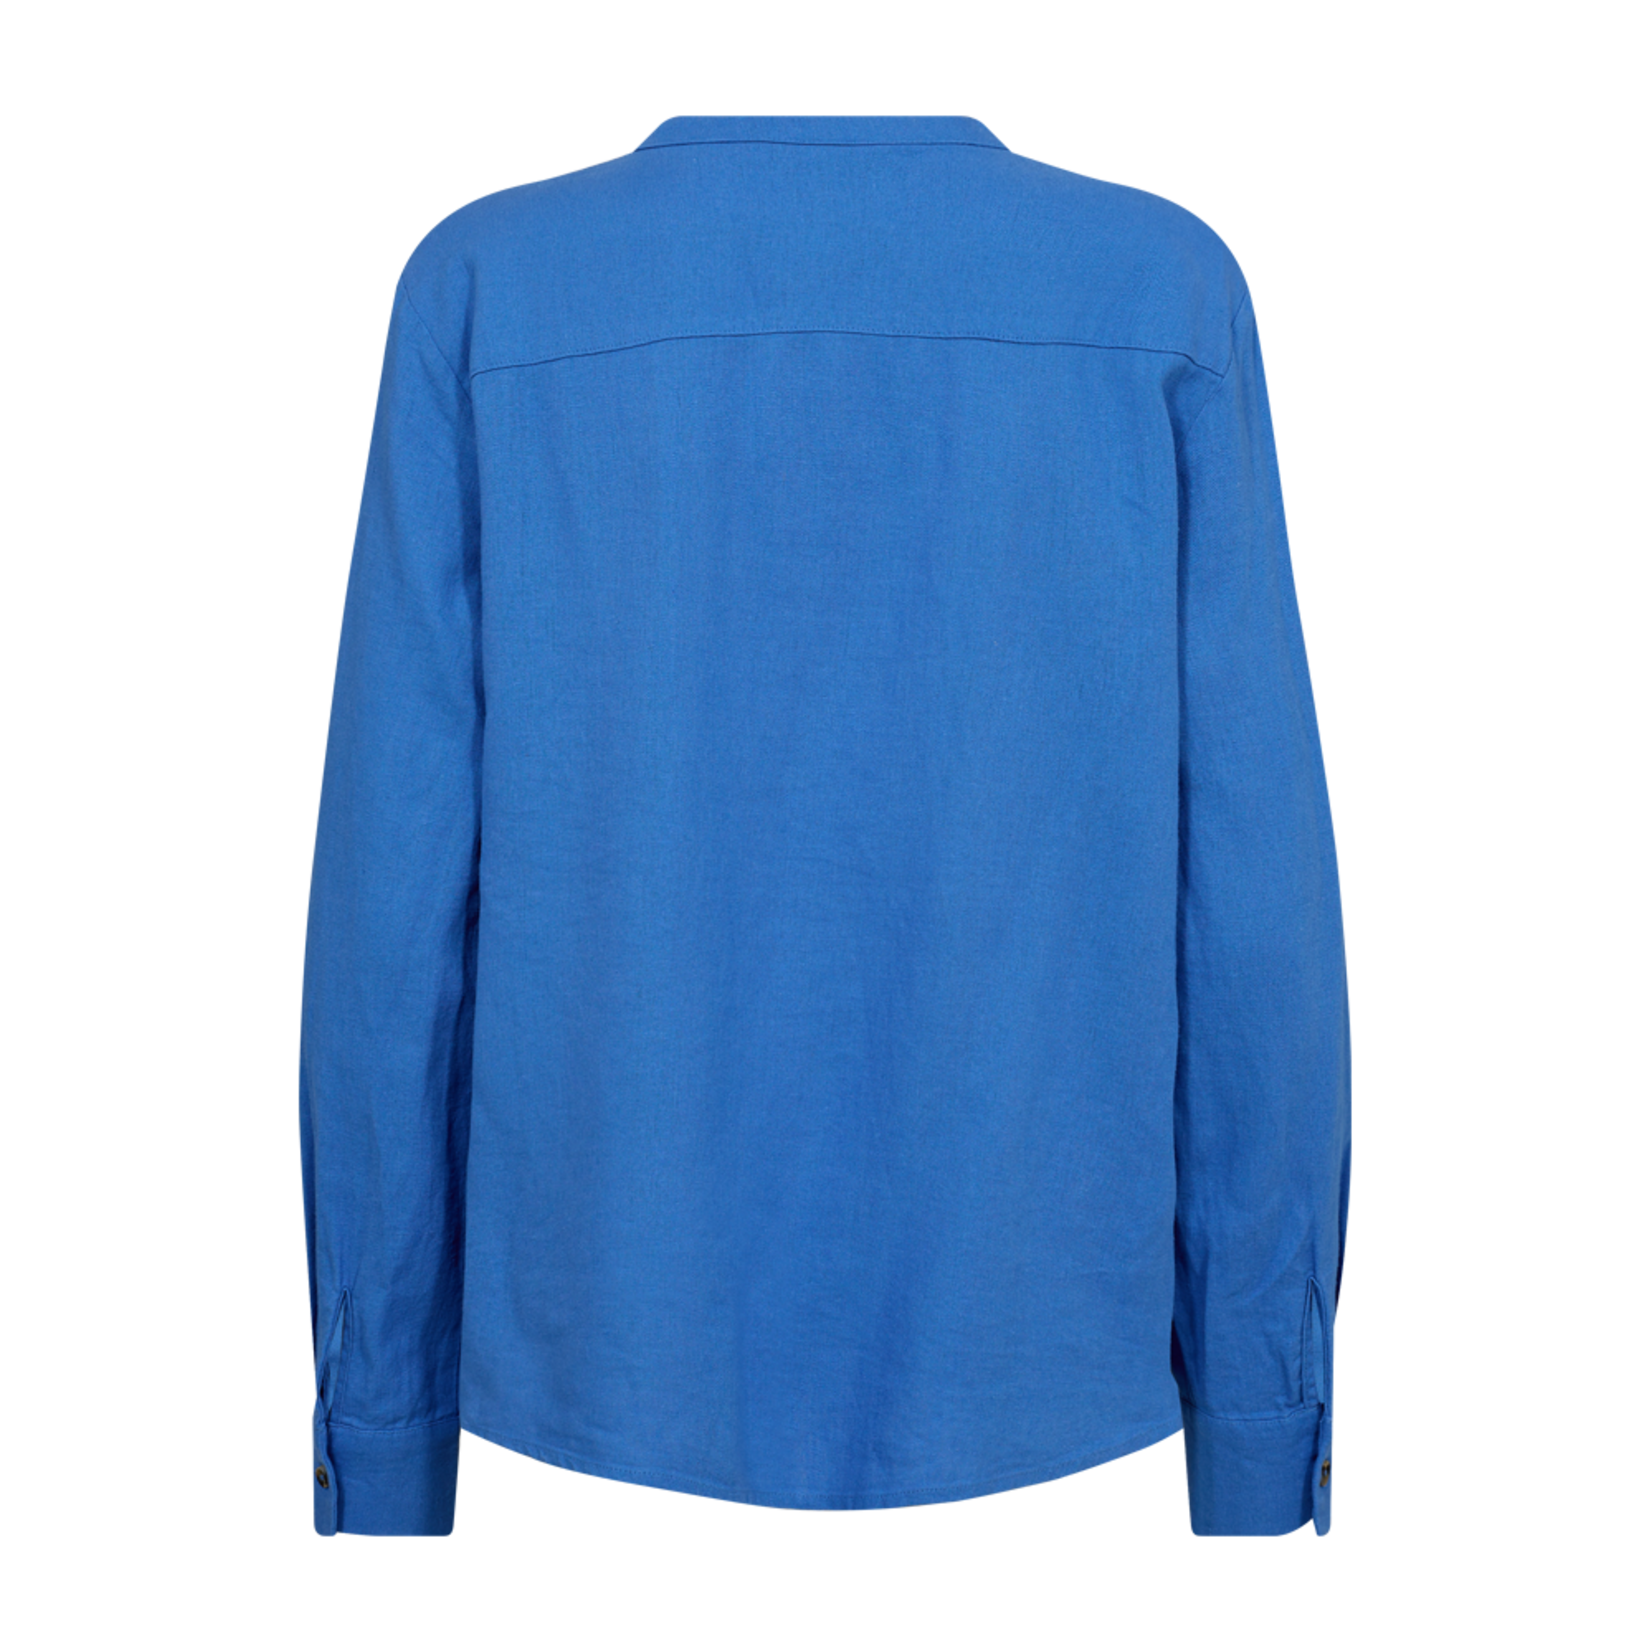 Free/quent Linnen hemd, blauw